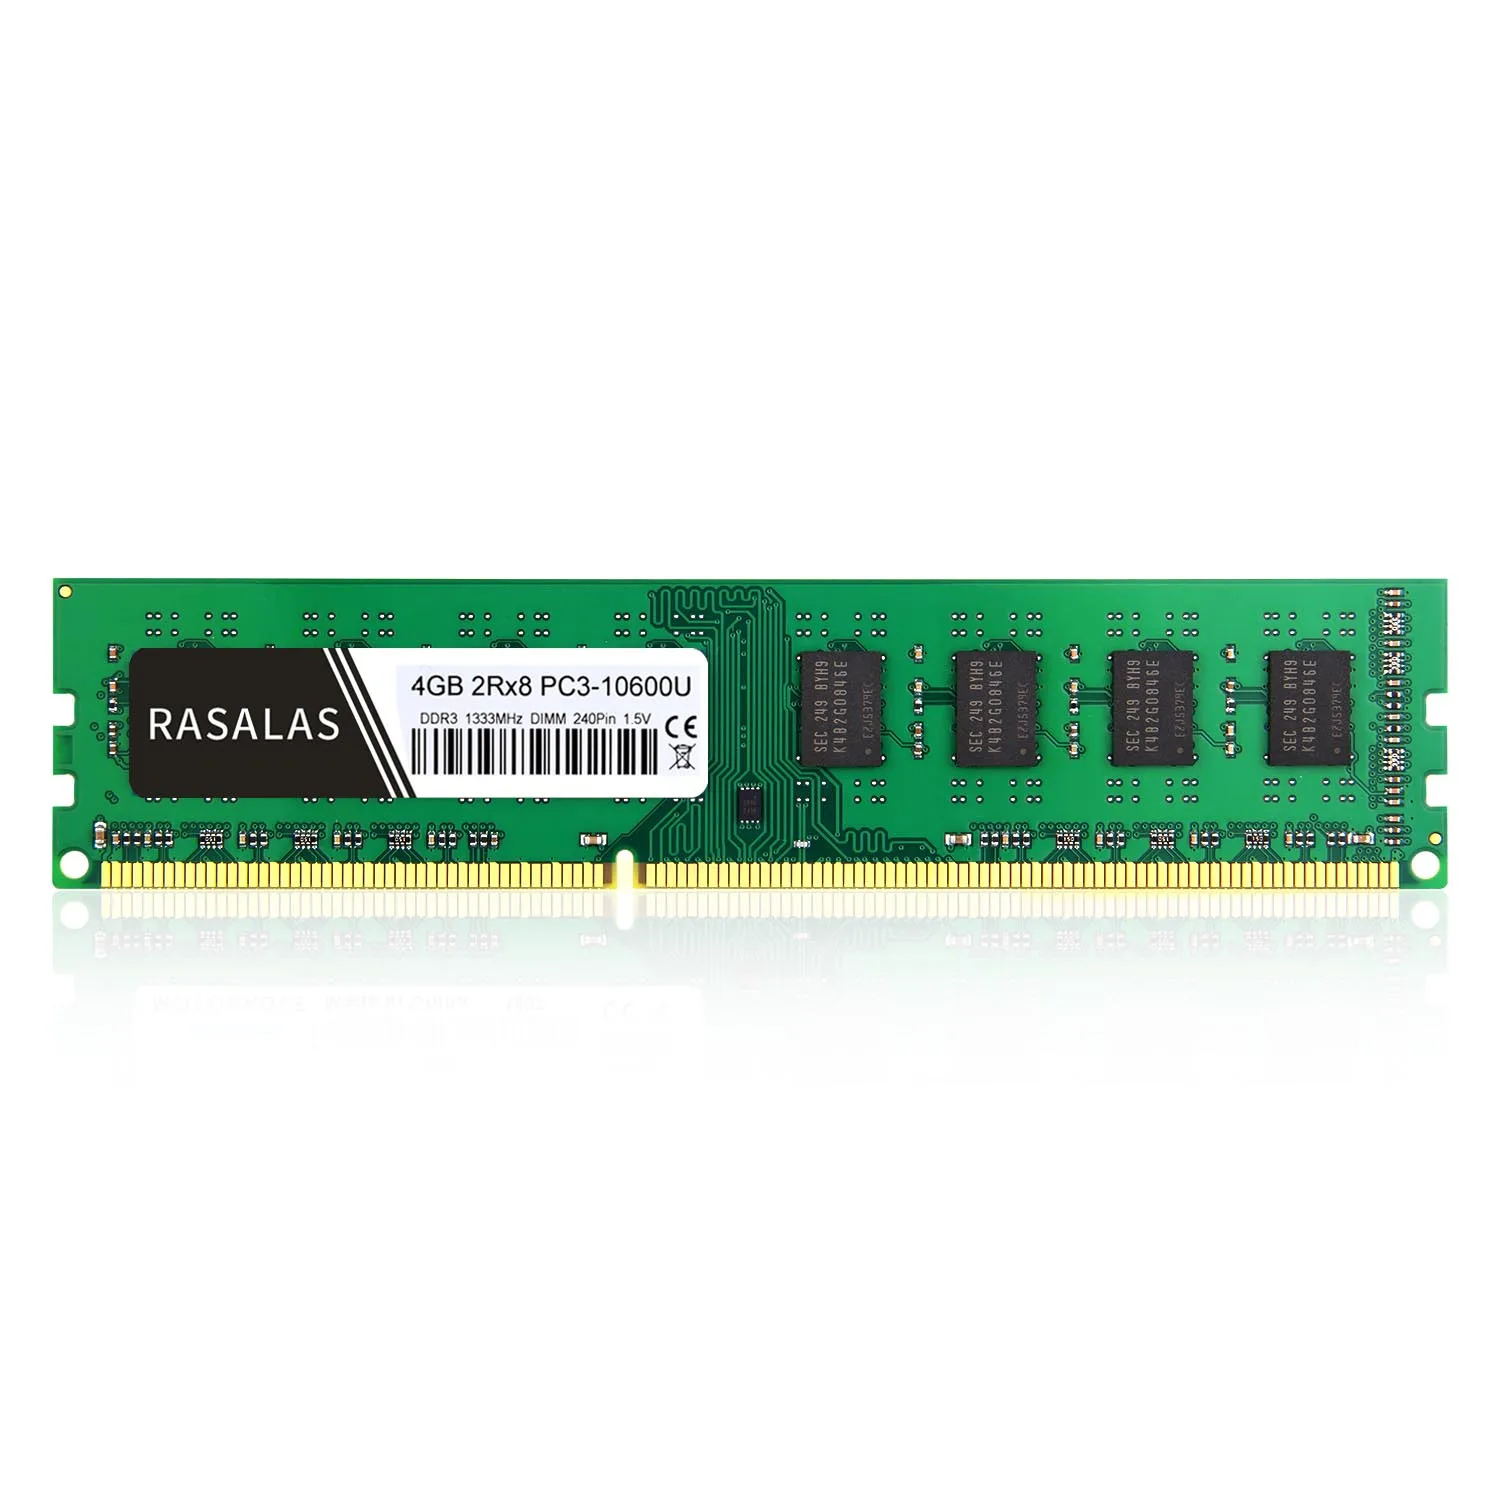 Rasalas 4GB 2Rx8 PC3-10600U DDR3 1333Mhz 1,5 V 240Pin No-Ecc DIMM Настольный ПК ram полностью совместимая память